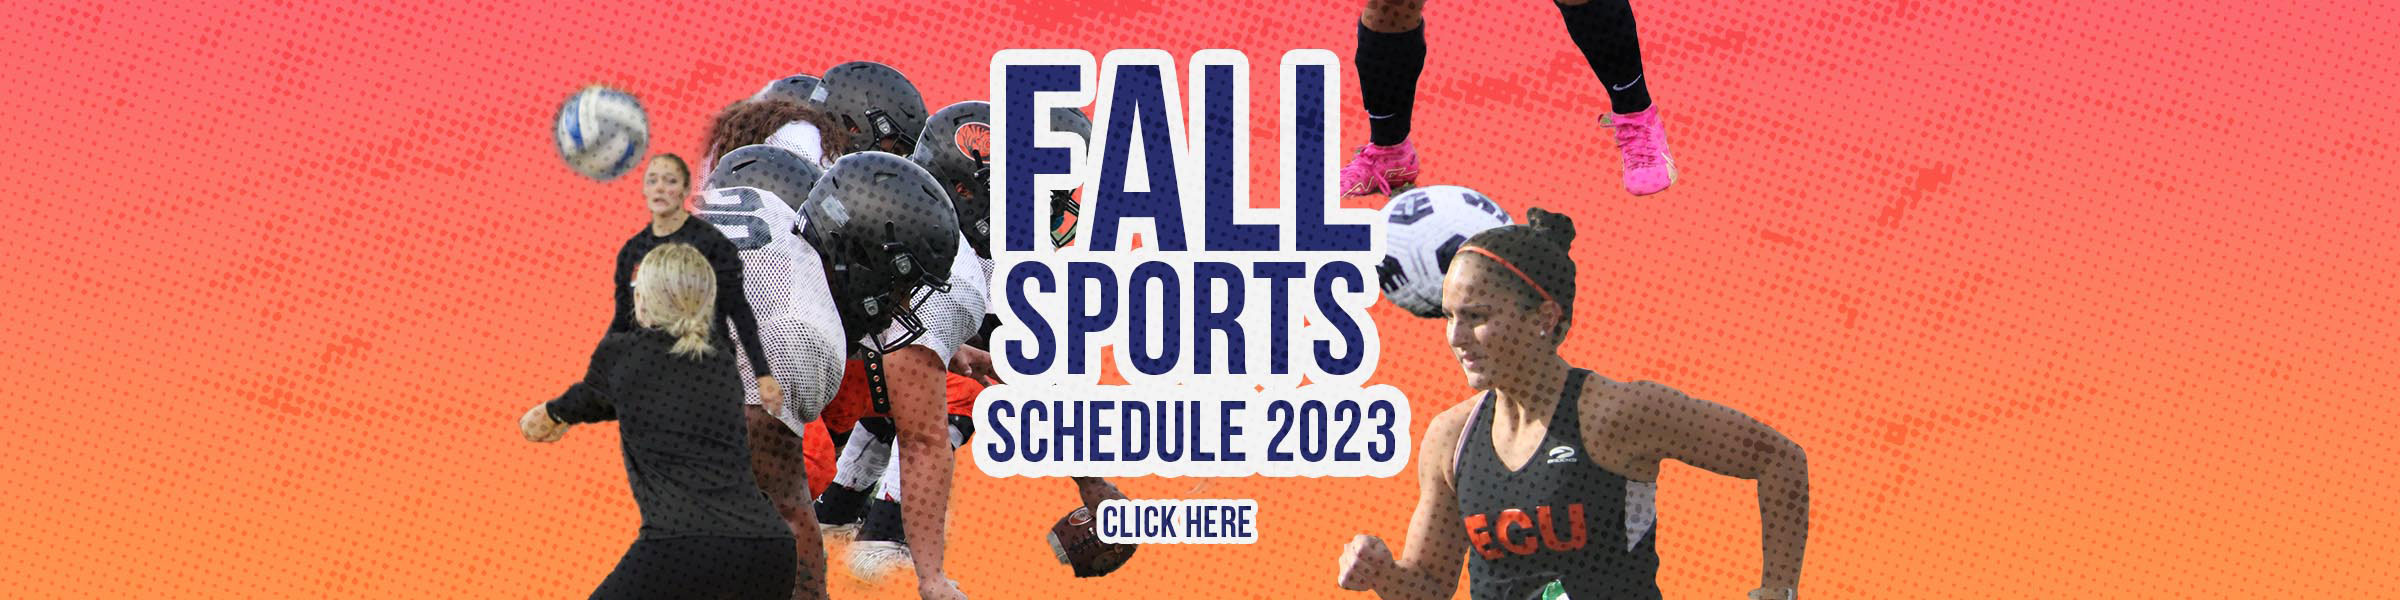 Fall Sports Schedule 2023